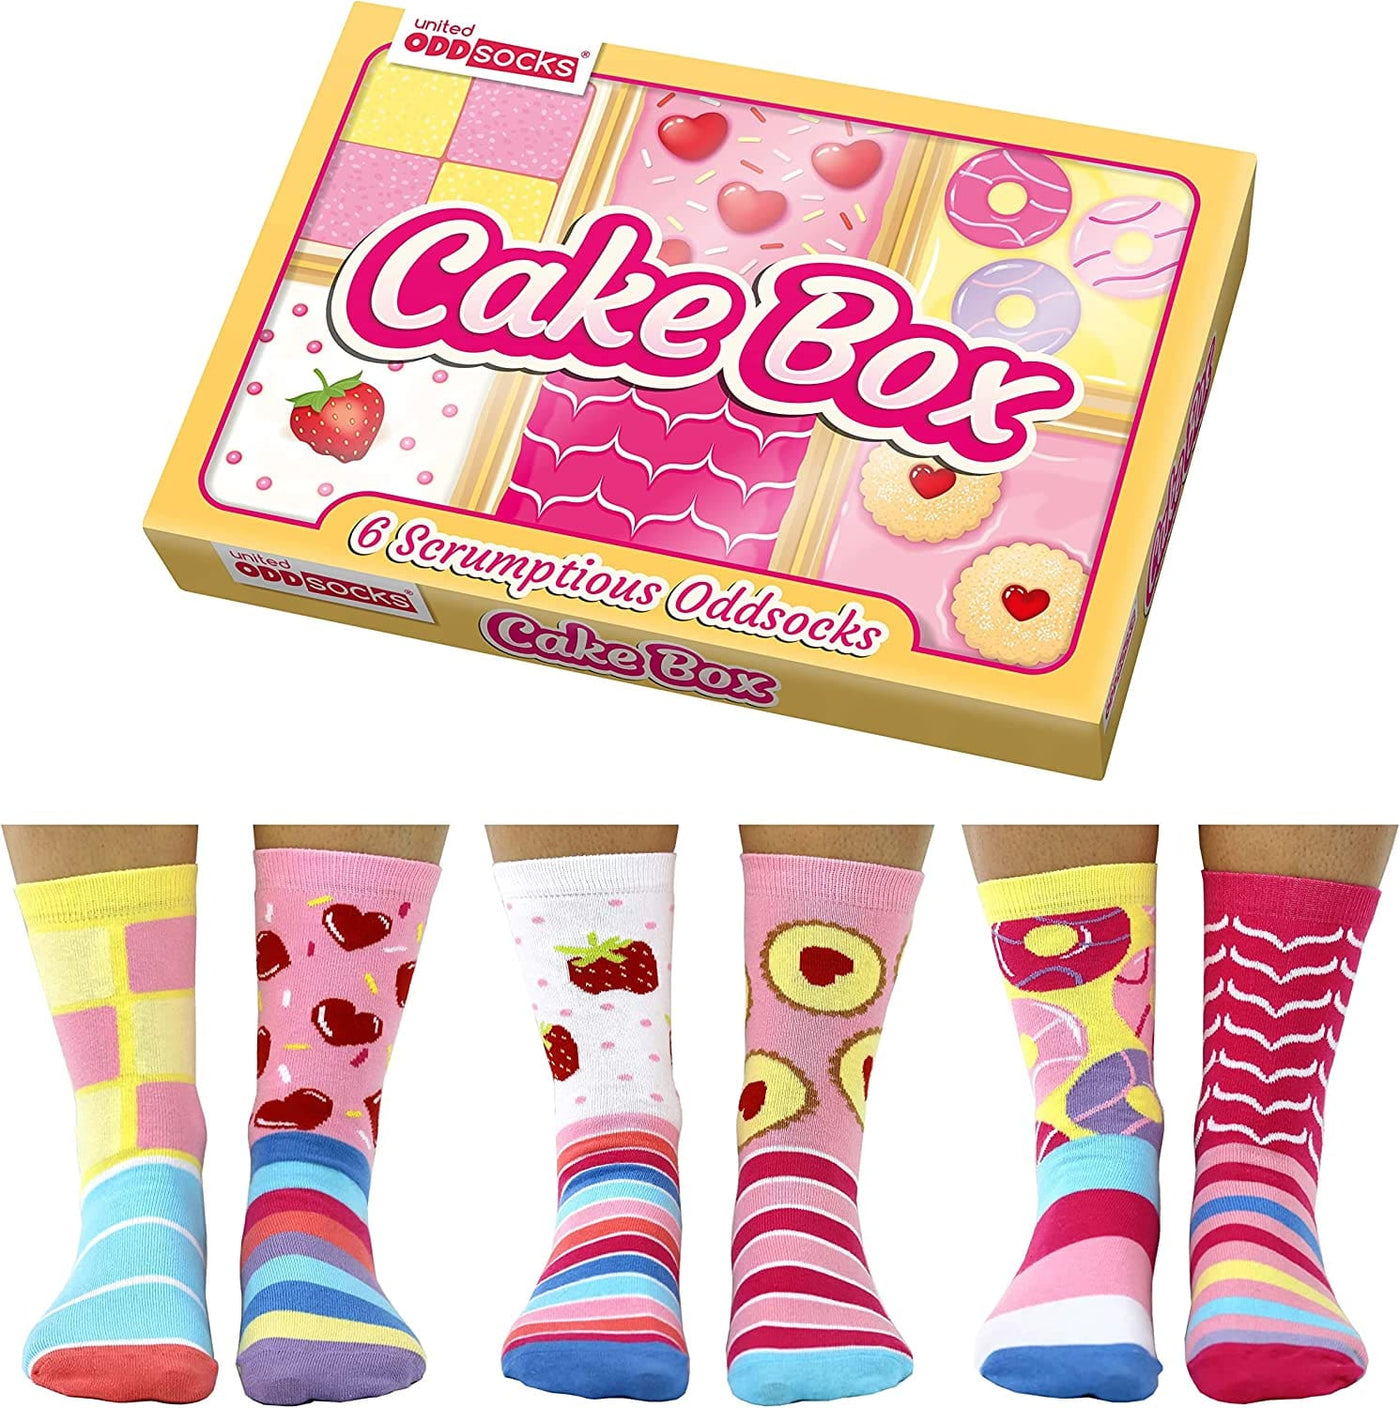 United Odd Socks Socks Cake Box Women's Gift Socks